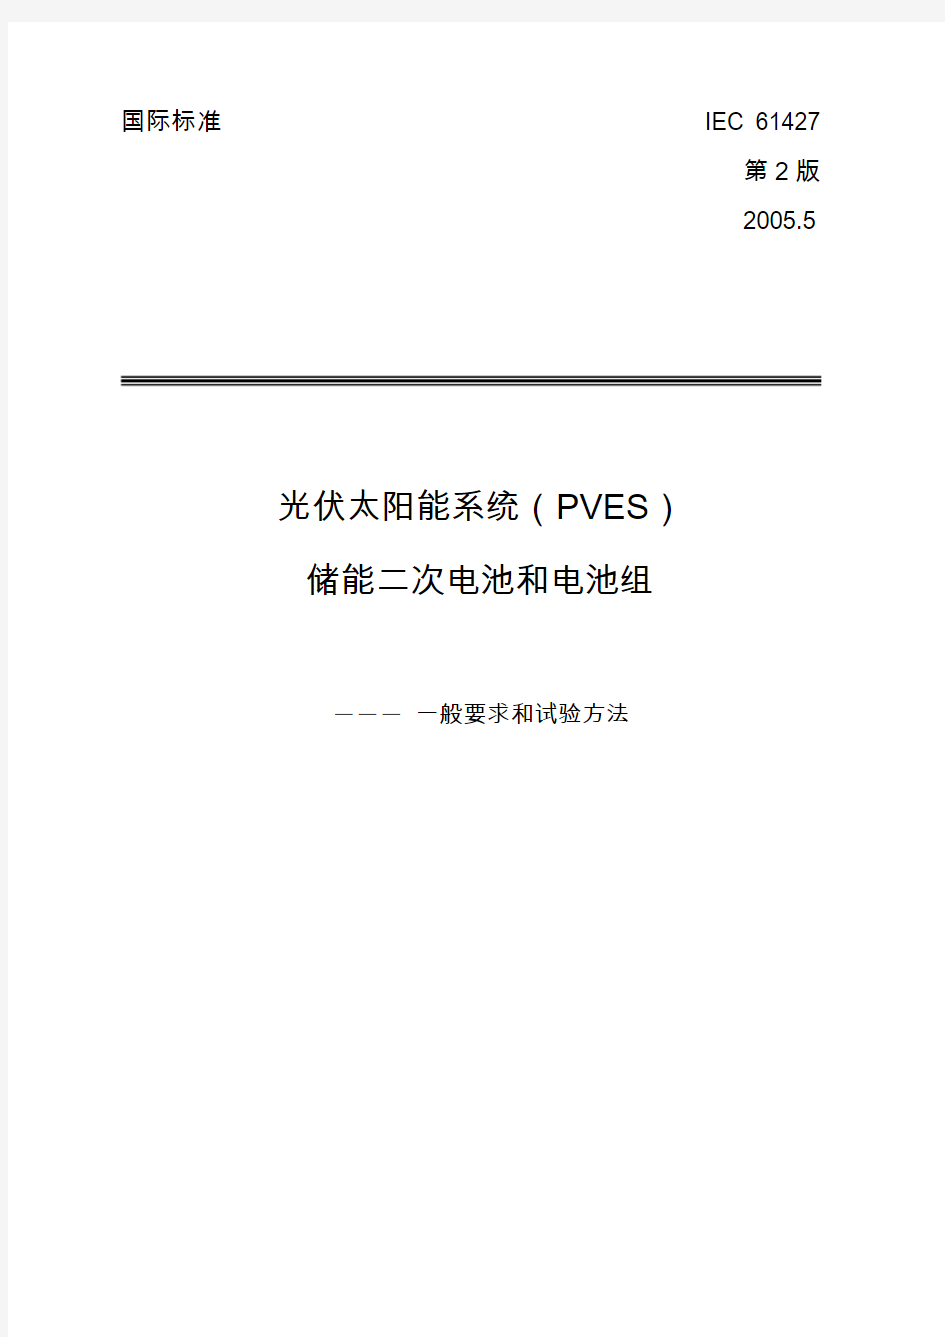 太阳能光伏电池标准 IEC 61427-2005(中文版)